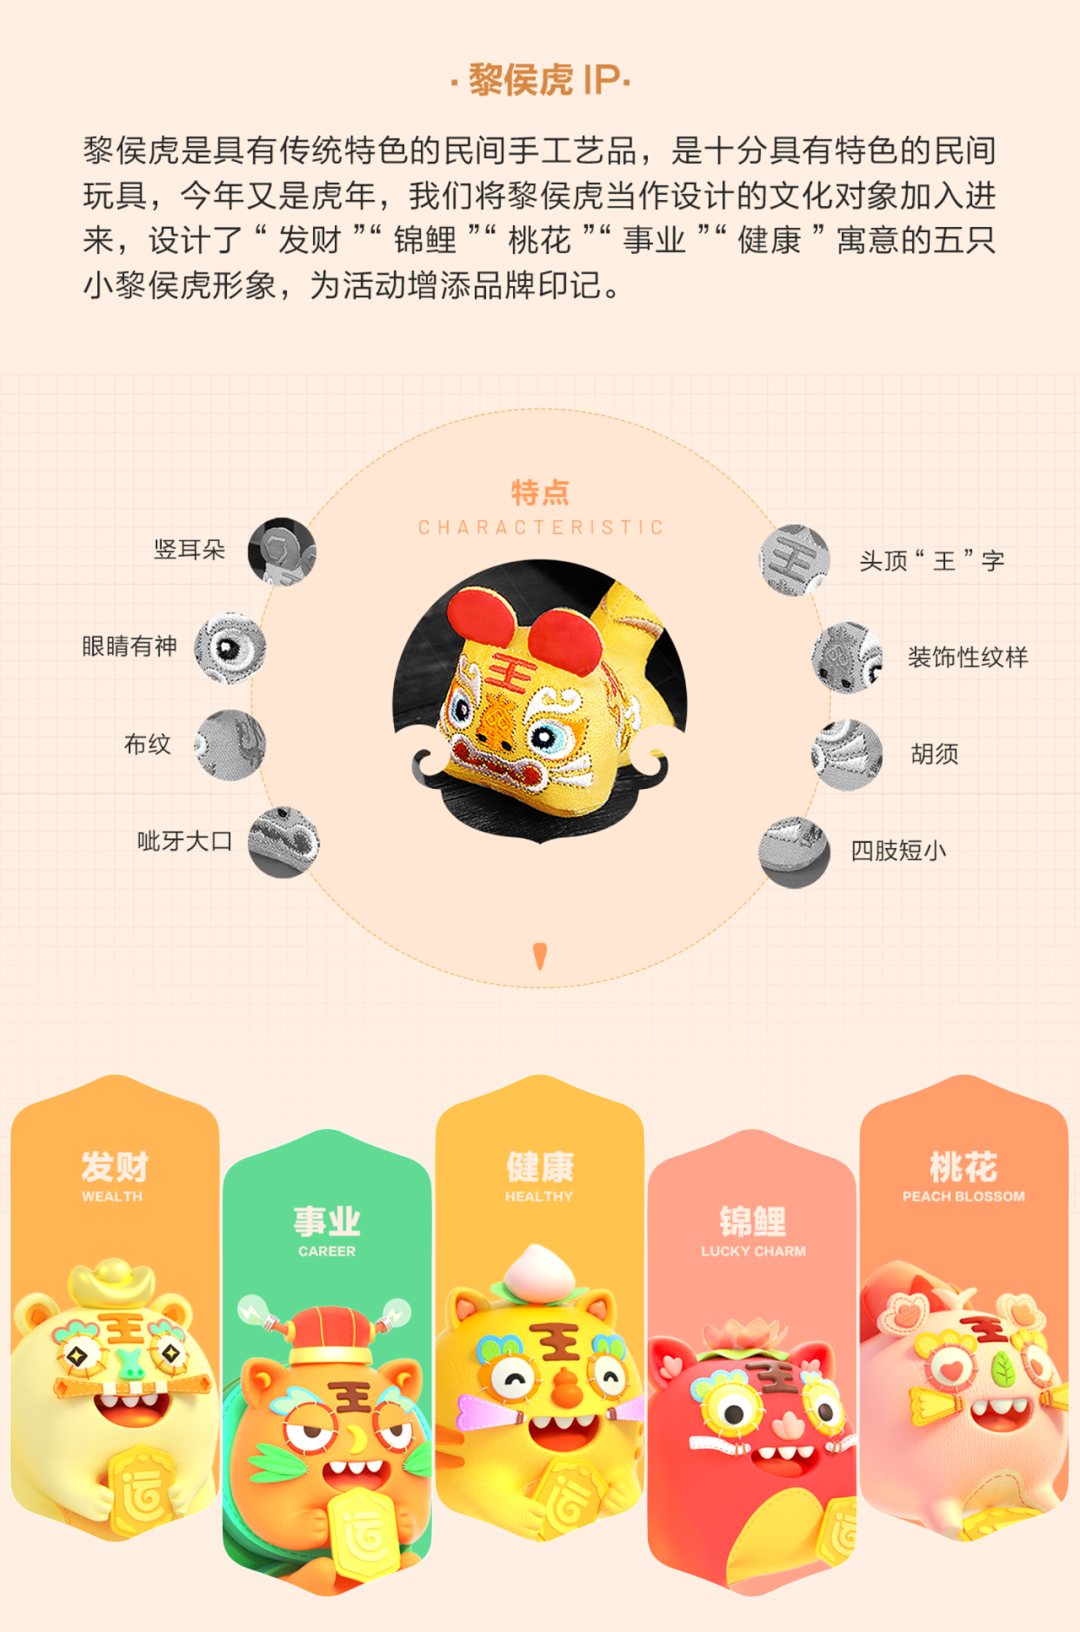 2022年好运中国年春节活动设计复盘 - 图13